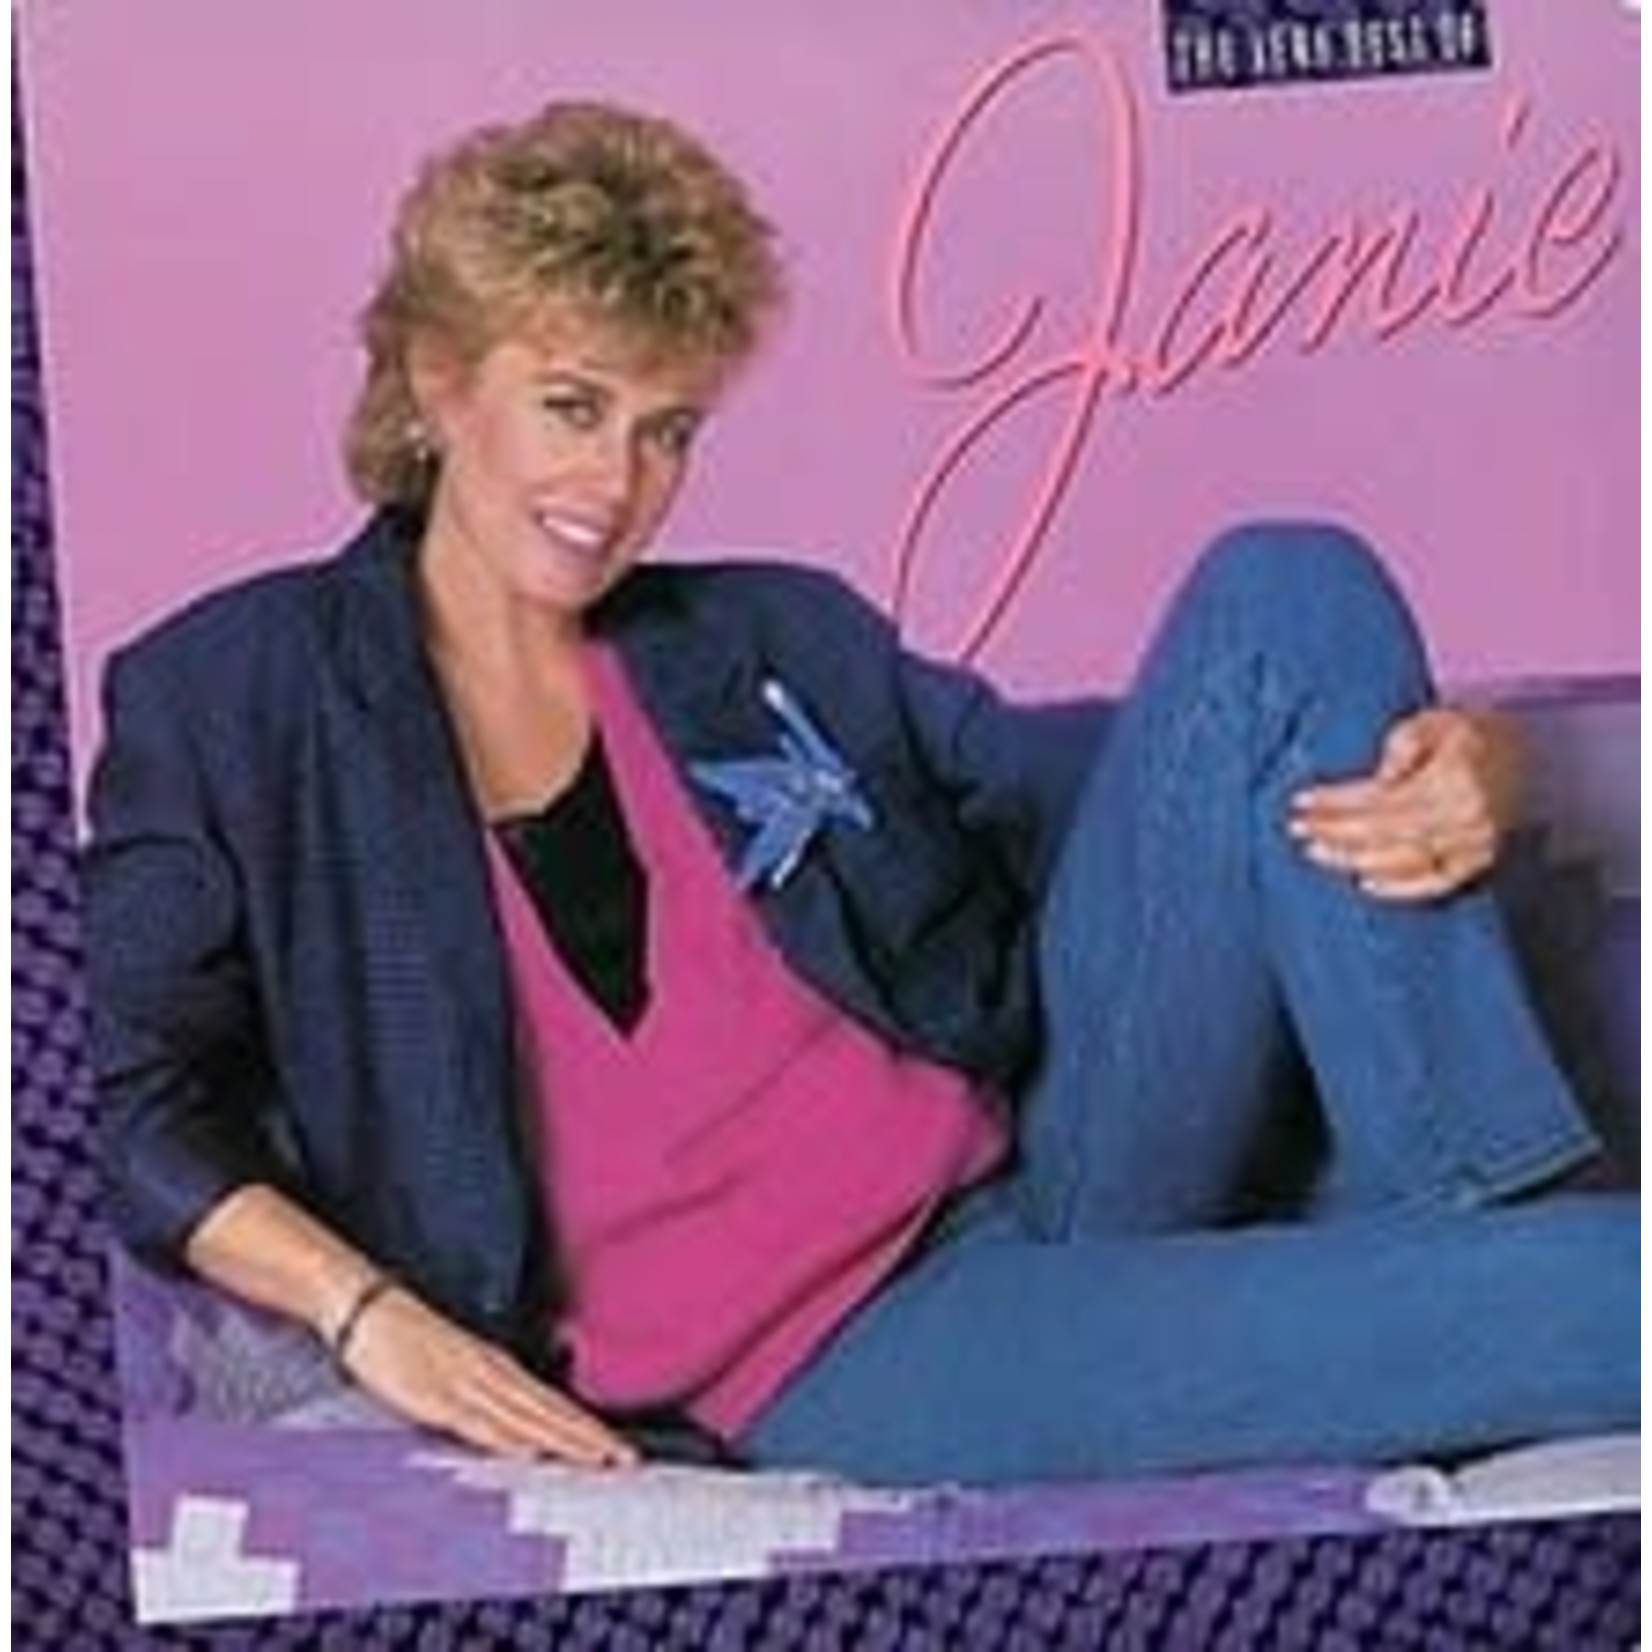 [Vintage] Janie Fricke - Very Best of...